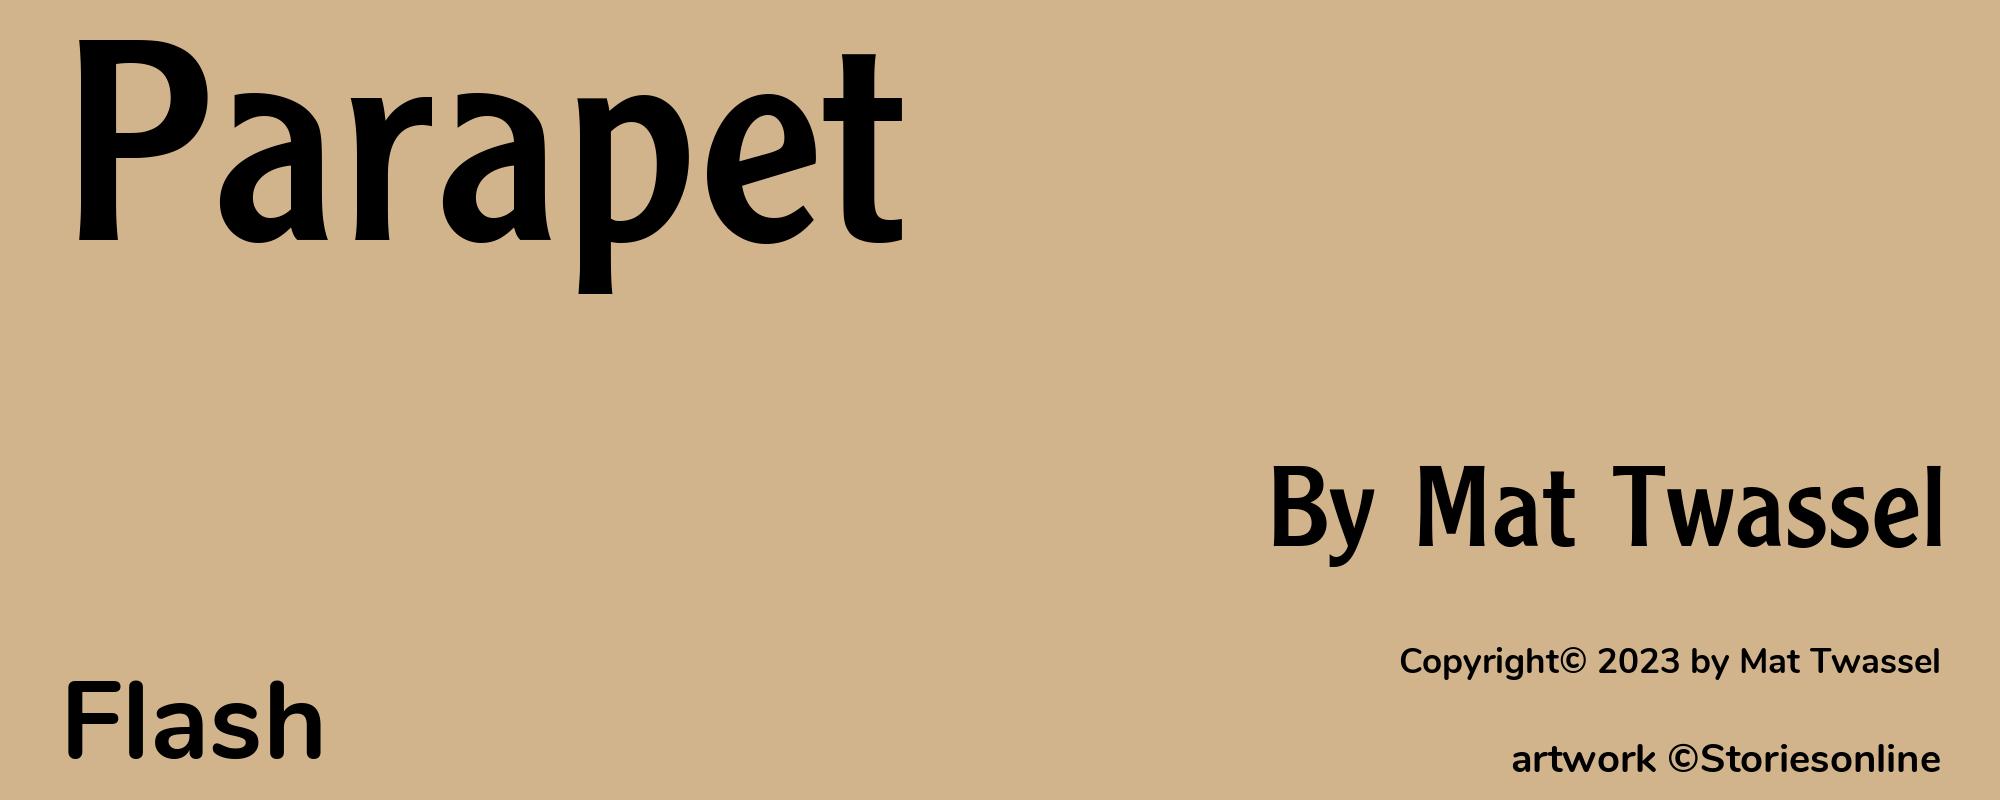 Parapet - Cover